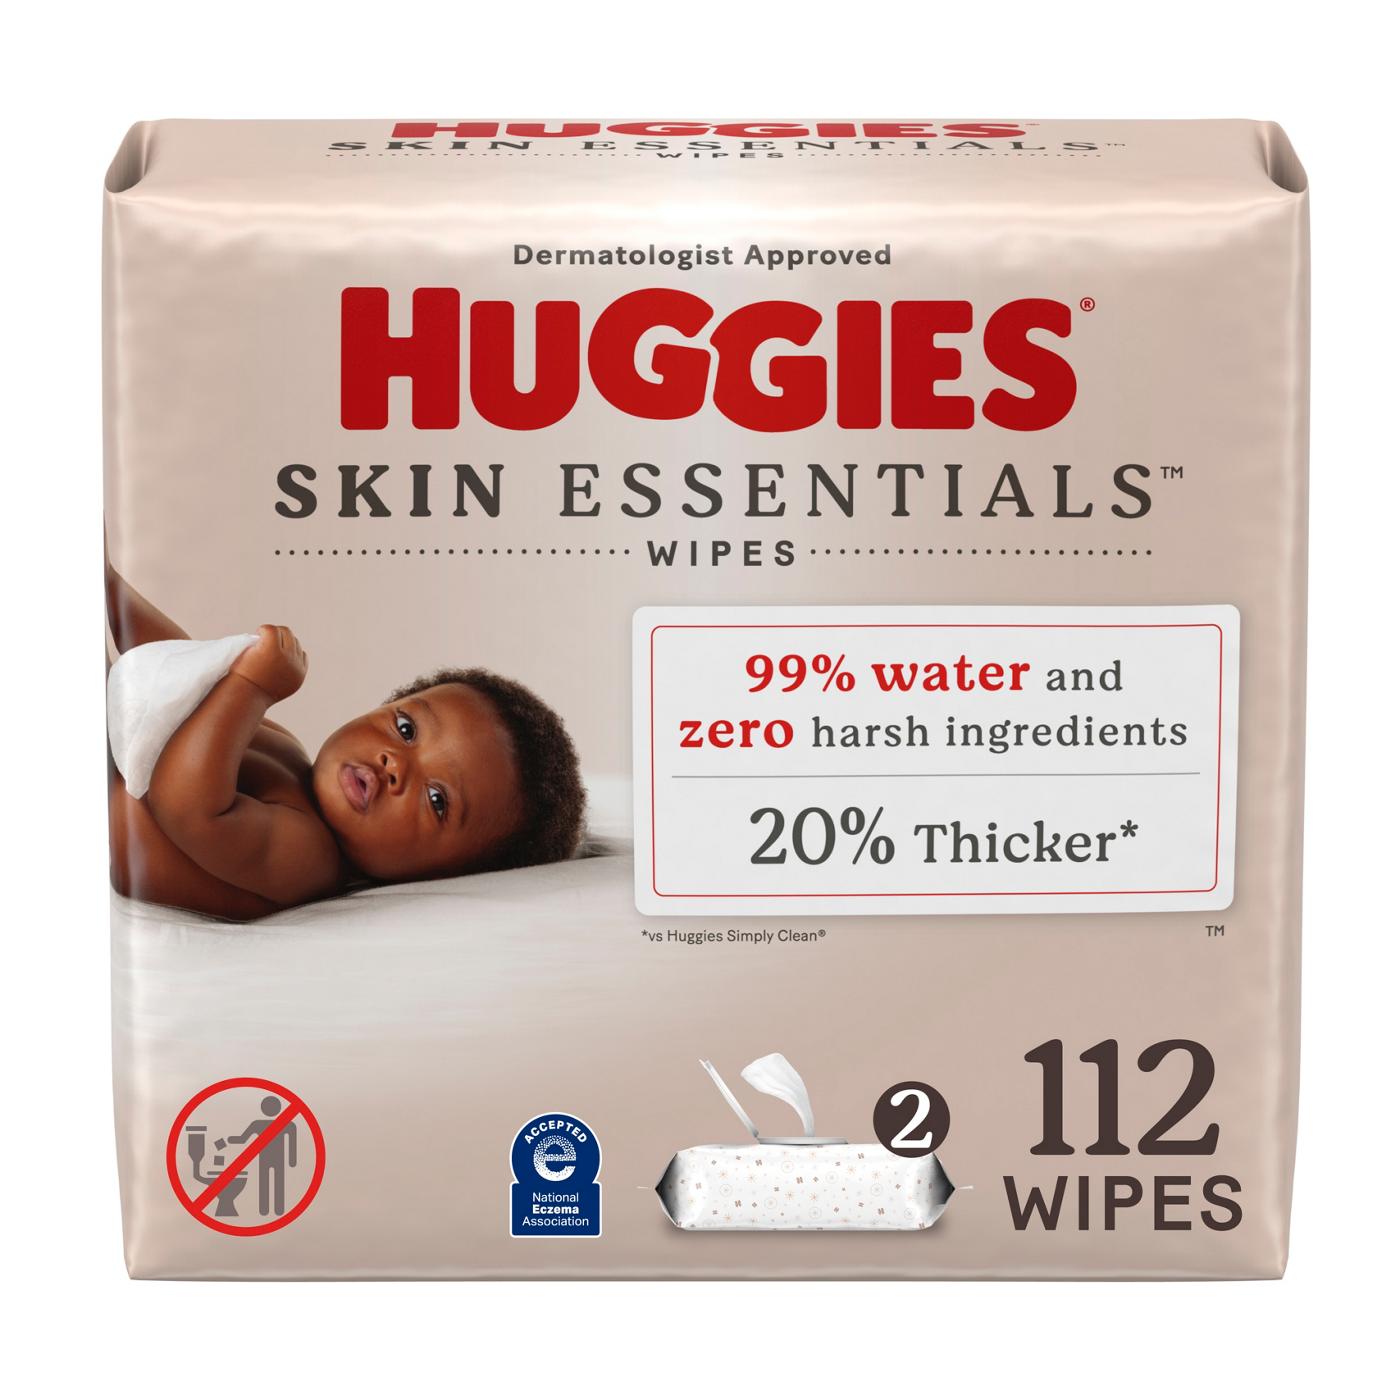 Huggies Skin Essentials Baby Wipes 2 Pk; image 1 of 8